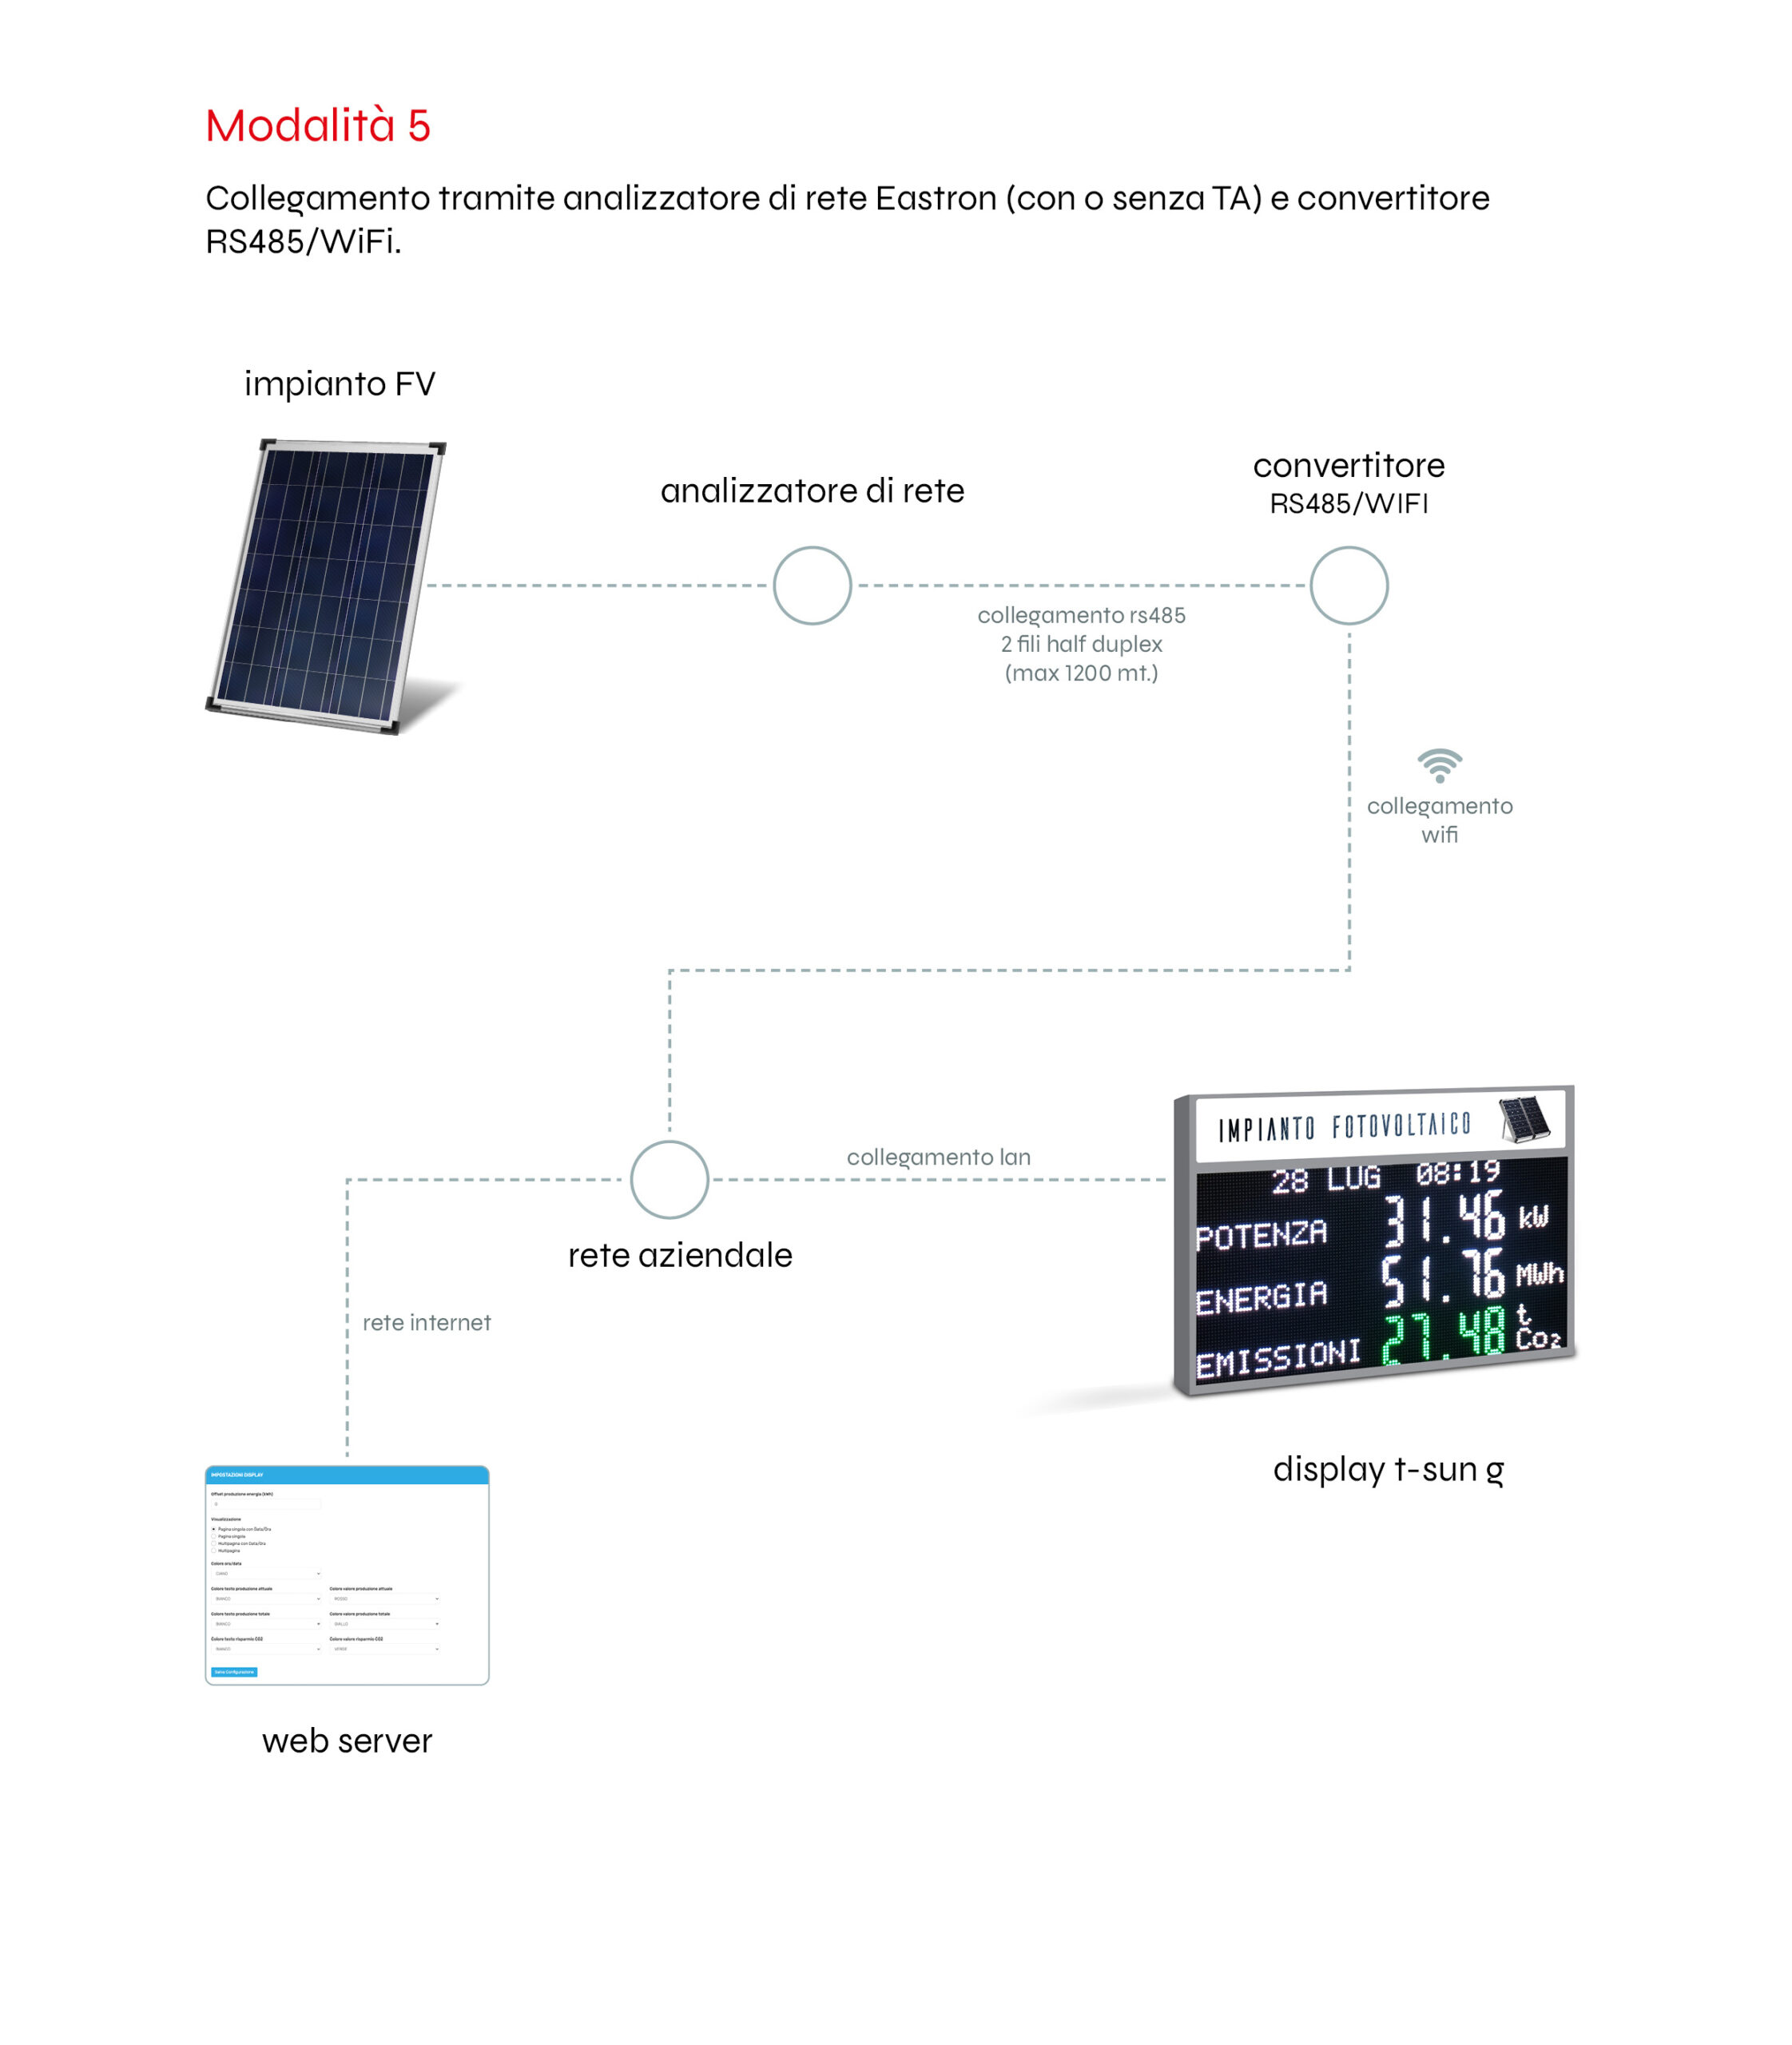 collegamento con convertitore RS485/WiFi